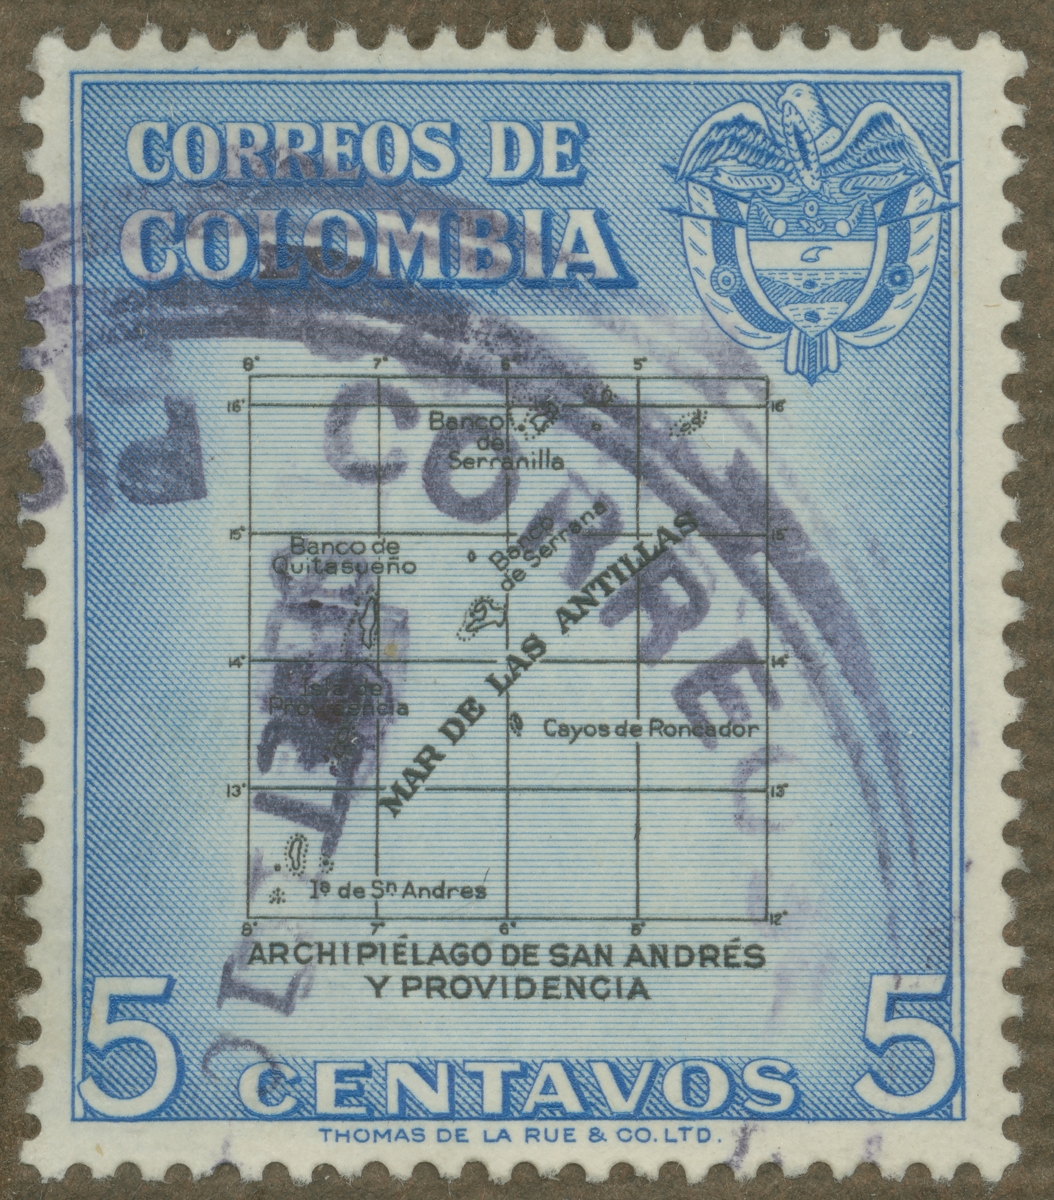 Frimärke ur Gösta Bodmans filatelistiska motivsamling, påbörjad 1950.
Frimärke från Colombia, 1956. Motiv av karta över Antillerna.